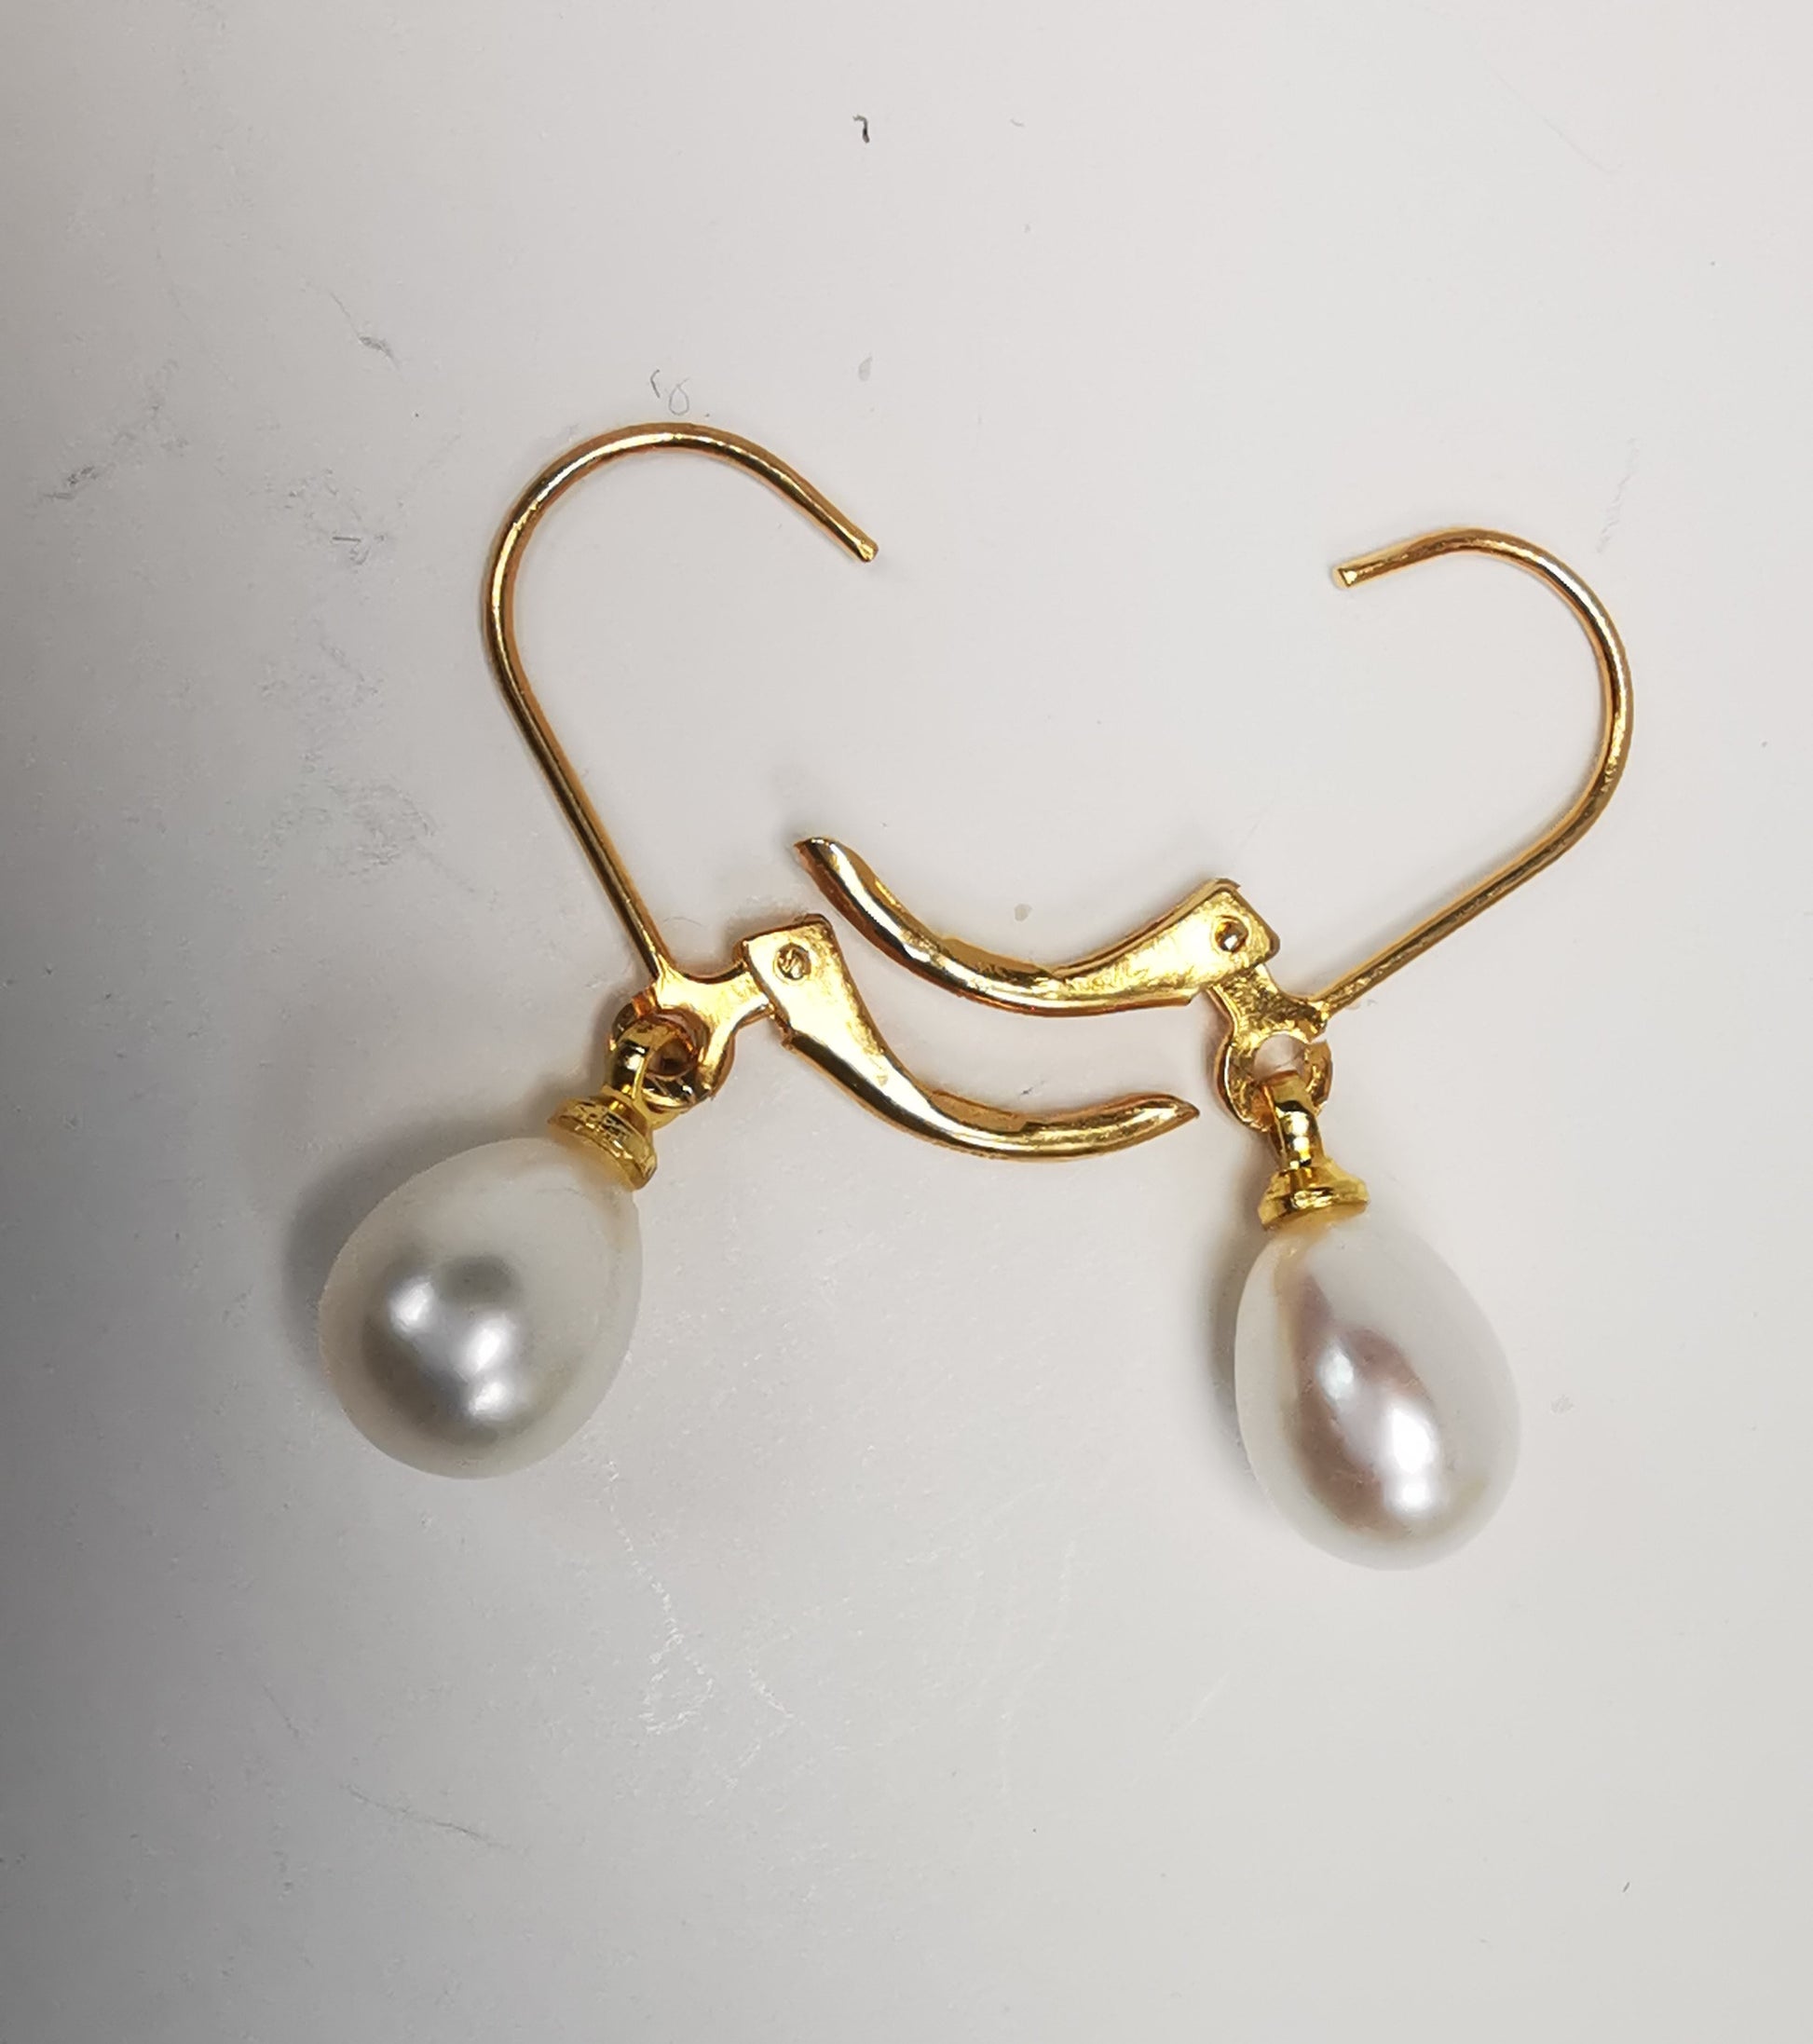 Boucles d'oreilles perles de culture blanches 7-9mm sur dormeuses plaquées or. Présentées posées sur un fond blanc, cote à cote, perles en bas, dormeuses ouvertes. Vue de dessus.